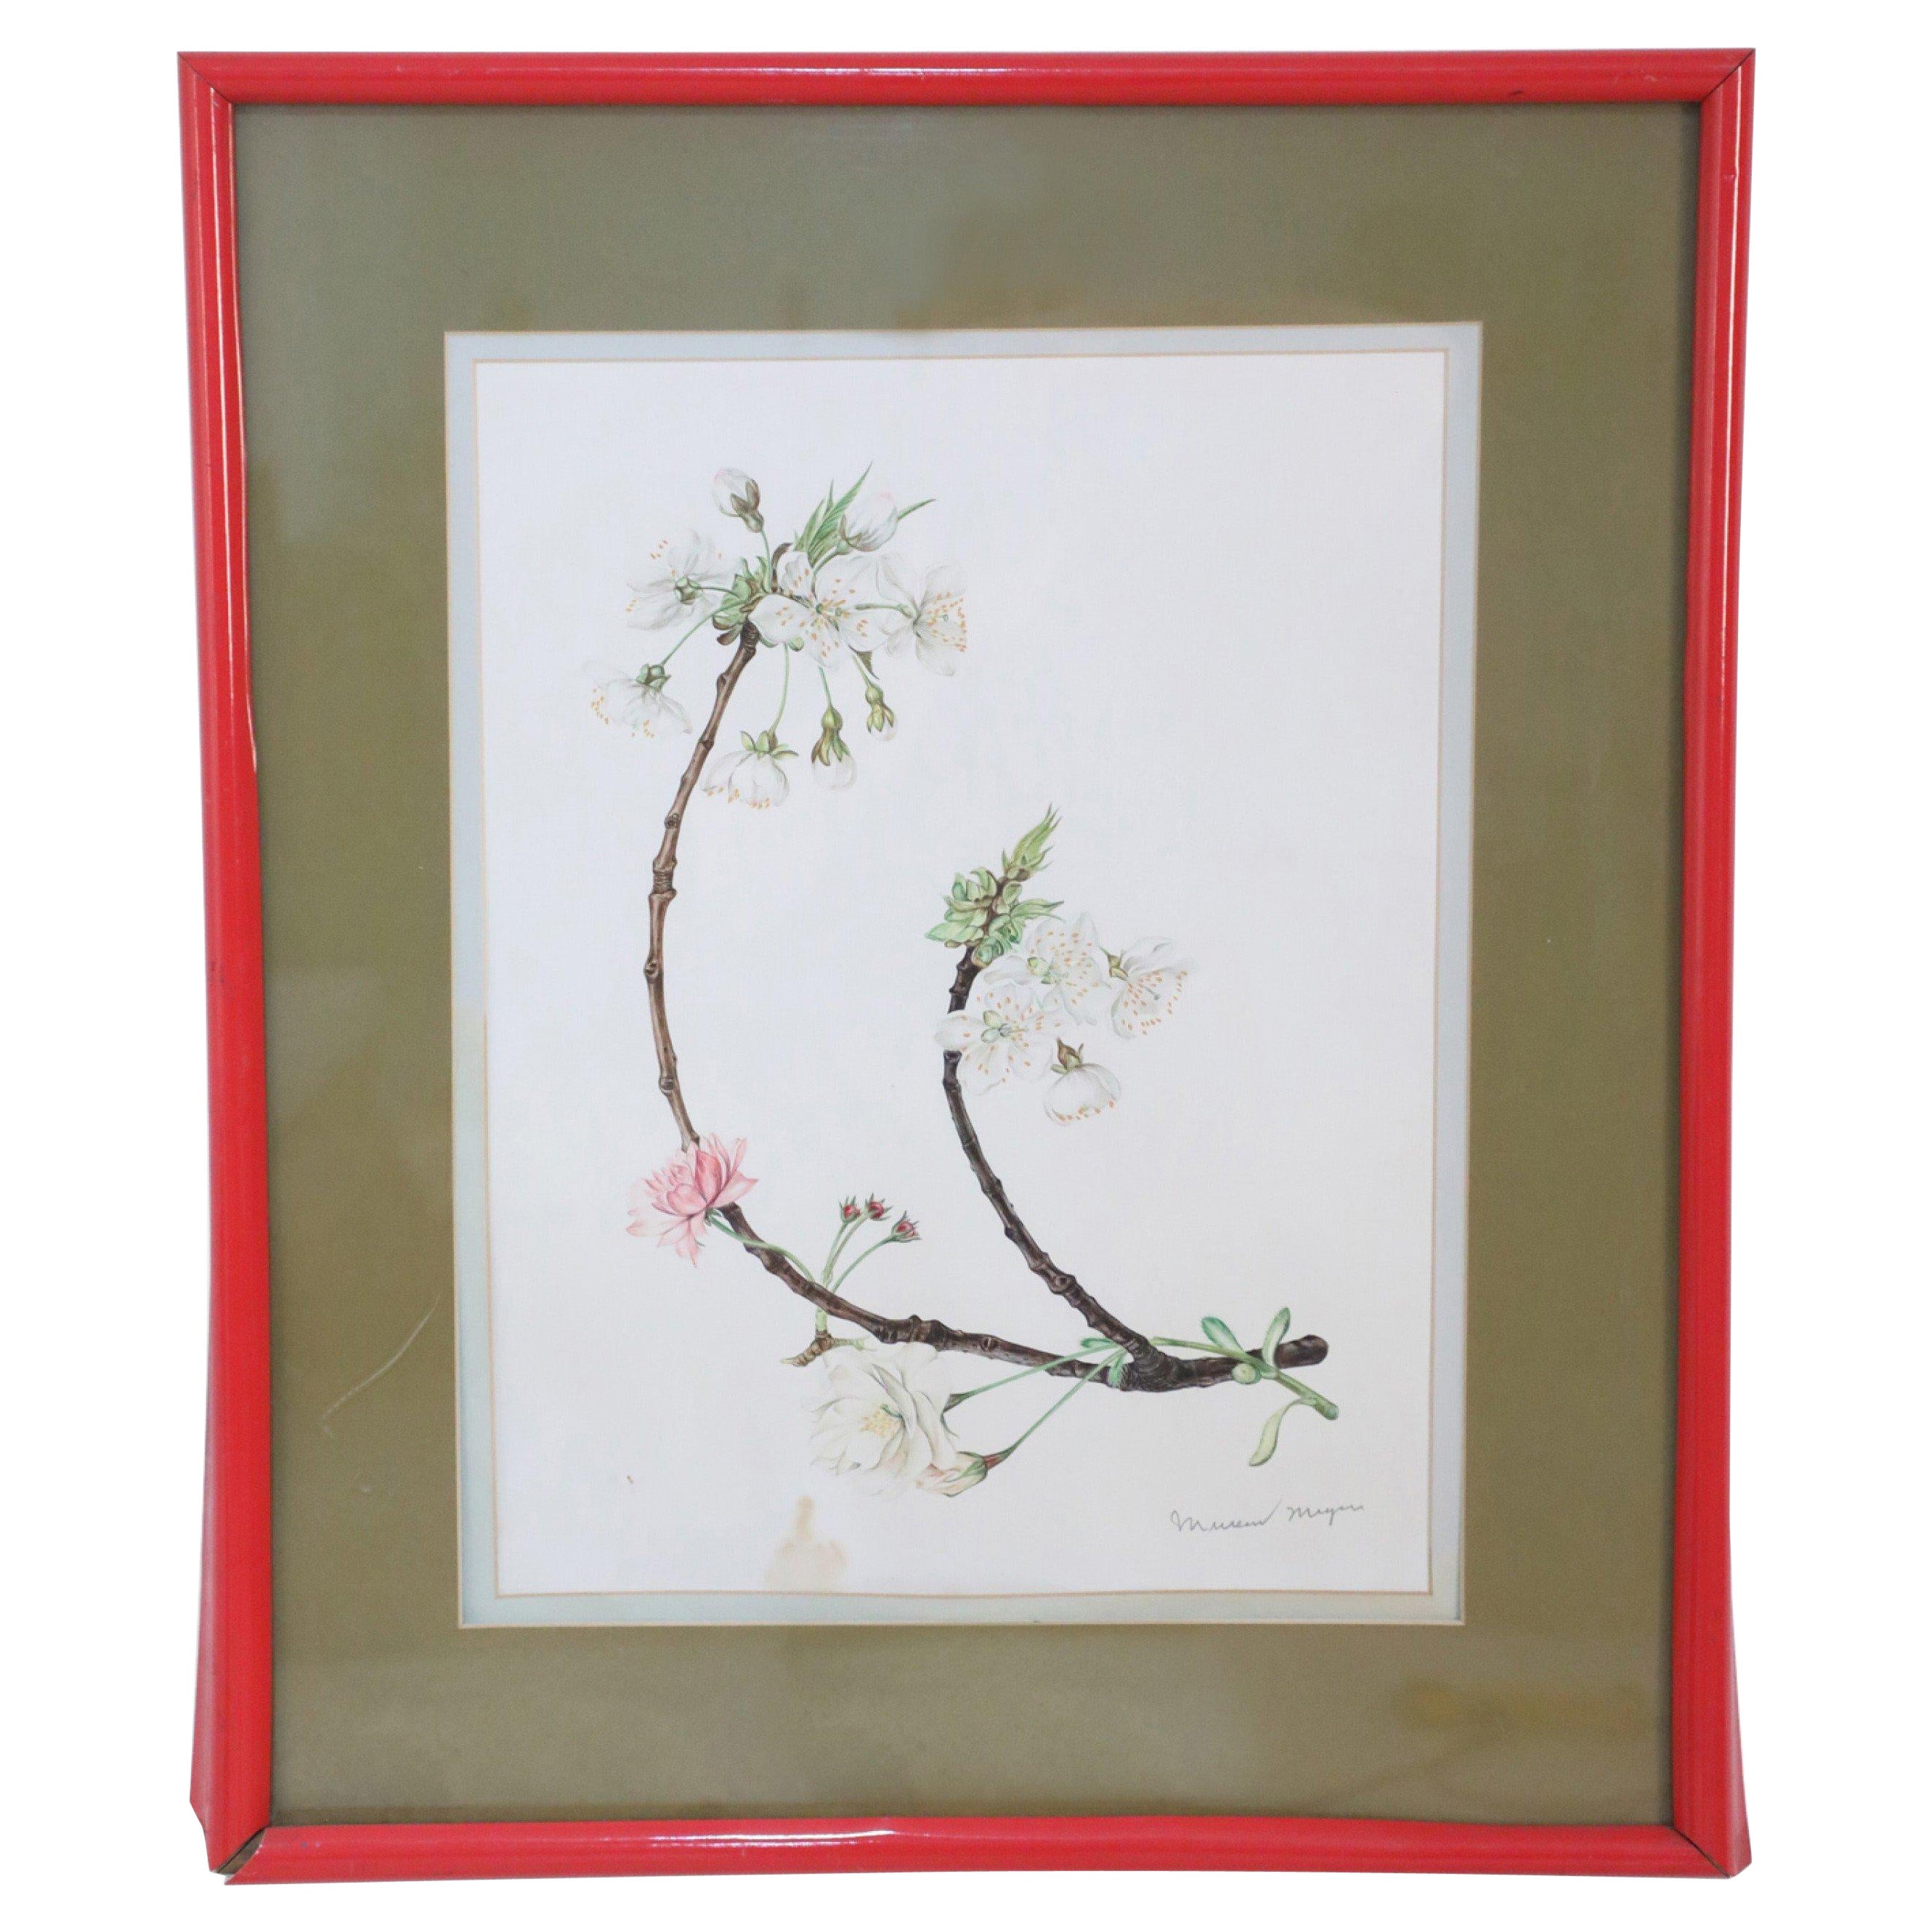 Framed Illustration of a Budding Flower Branch For Sale